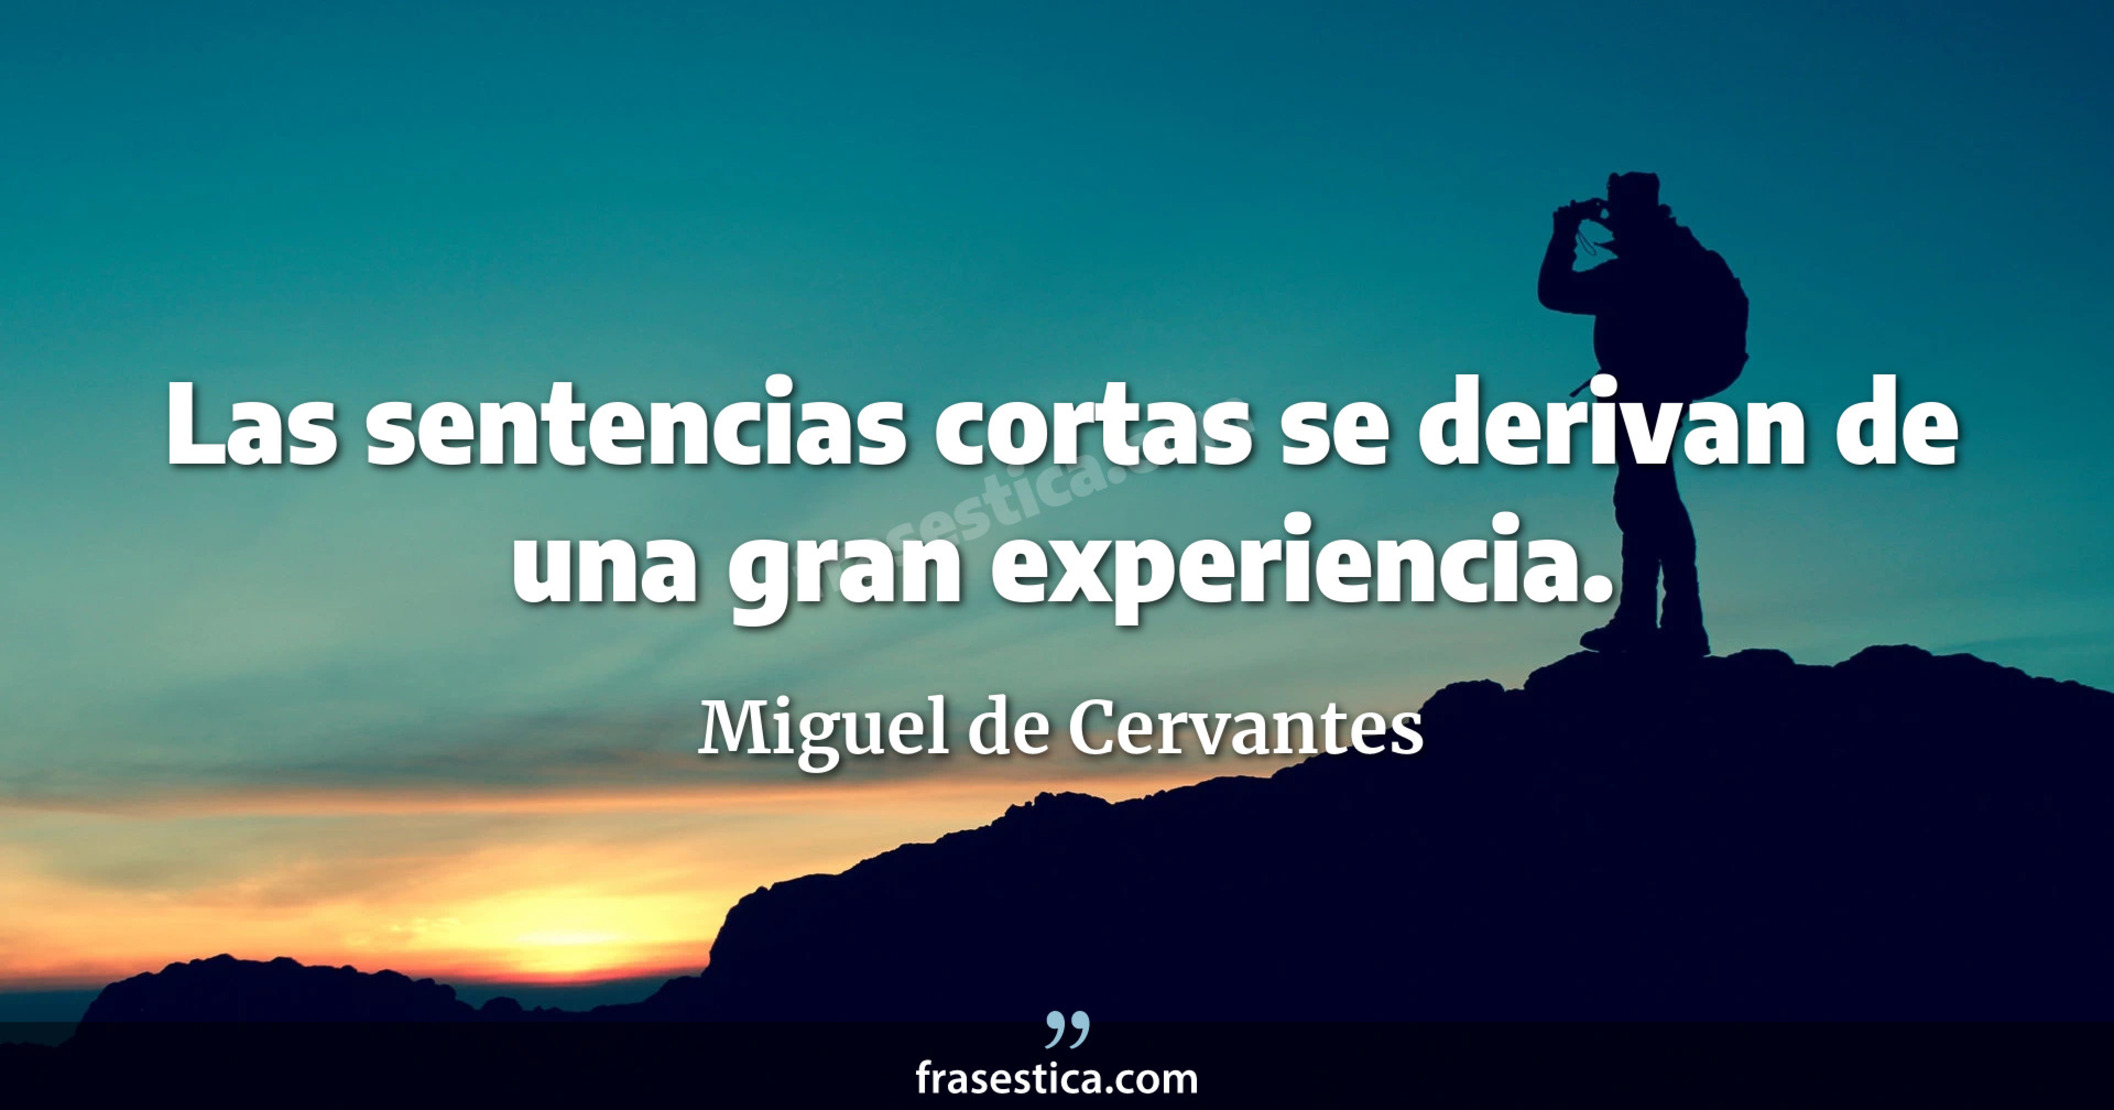 Las sentencias cortas se derivan de una gran experiencia. - Miguel de Cervantes